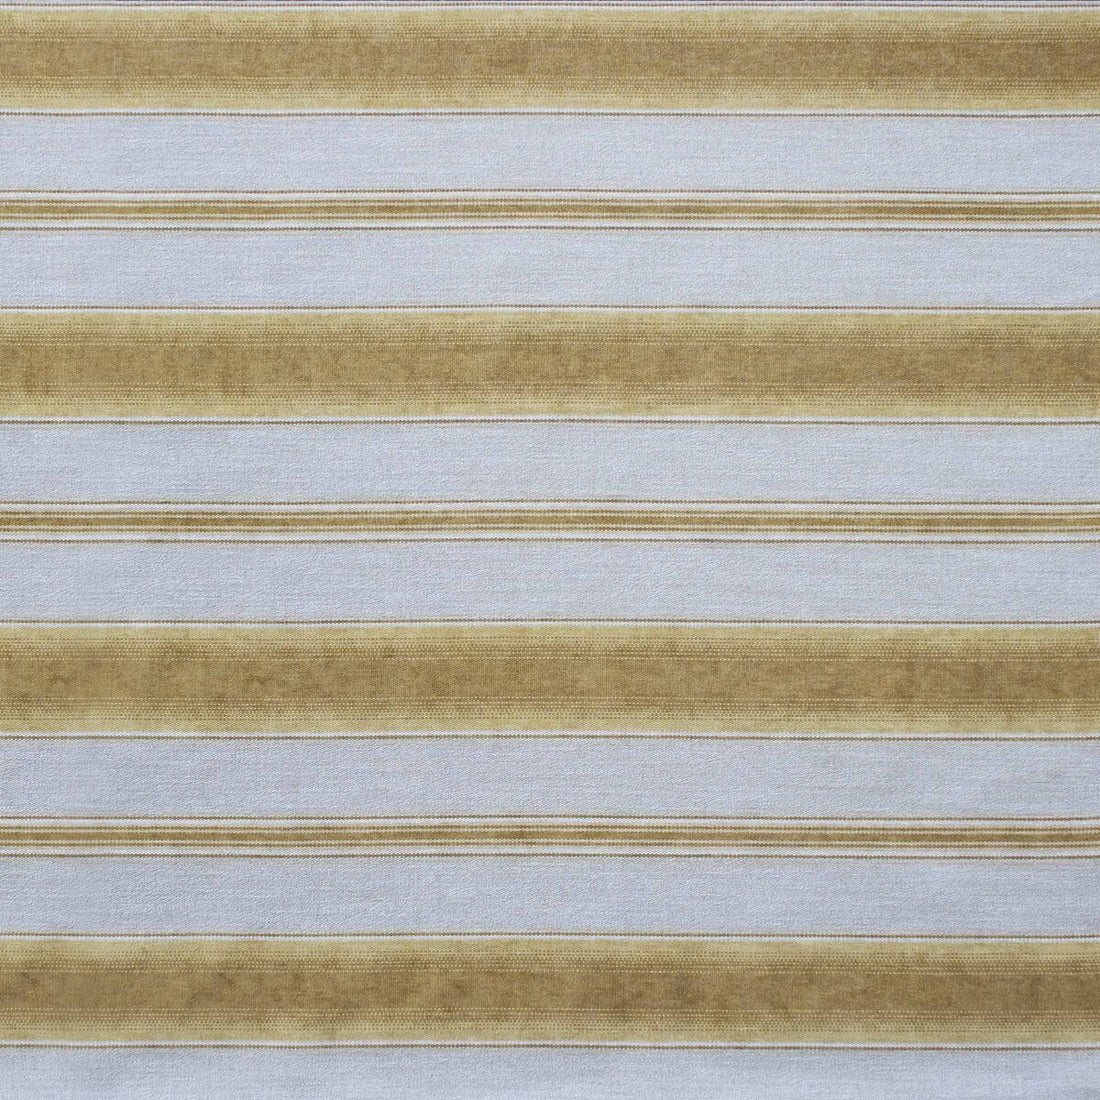 Teodosio fabric in ocre color - pattern LCT1125.007.0 - by Gaston y Daniela in the Lorenzo Castillo IX Hesperia collection